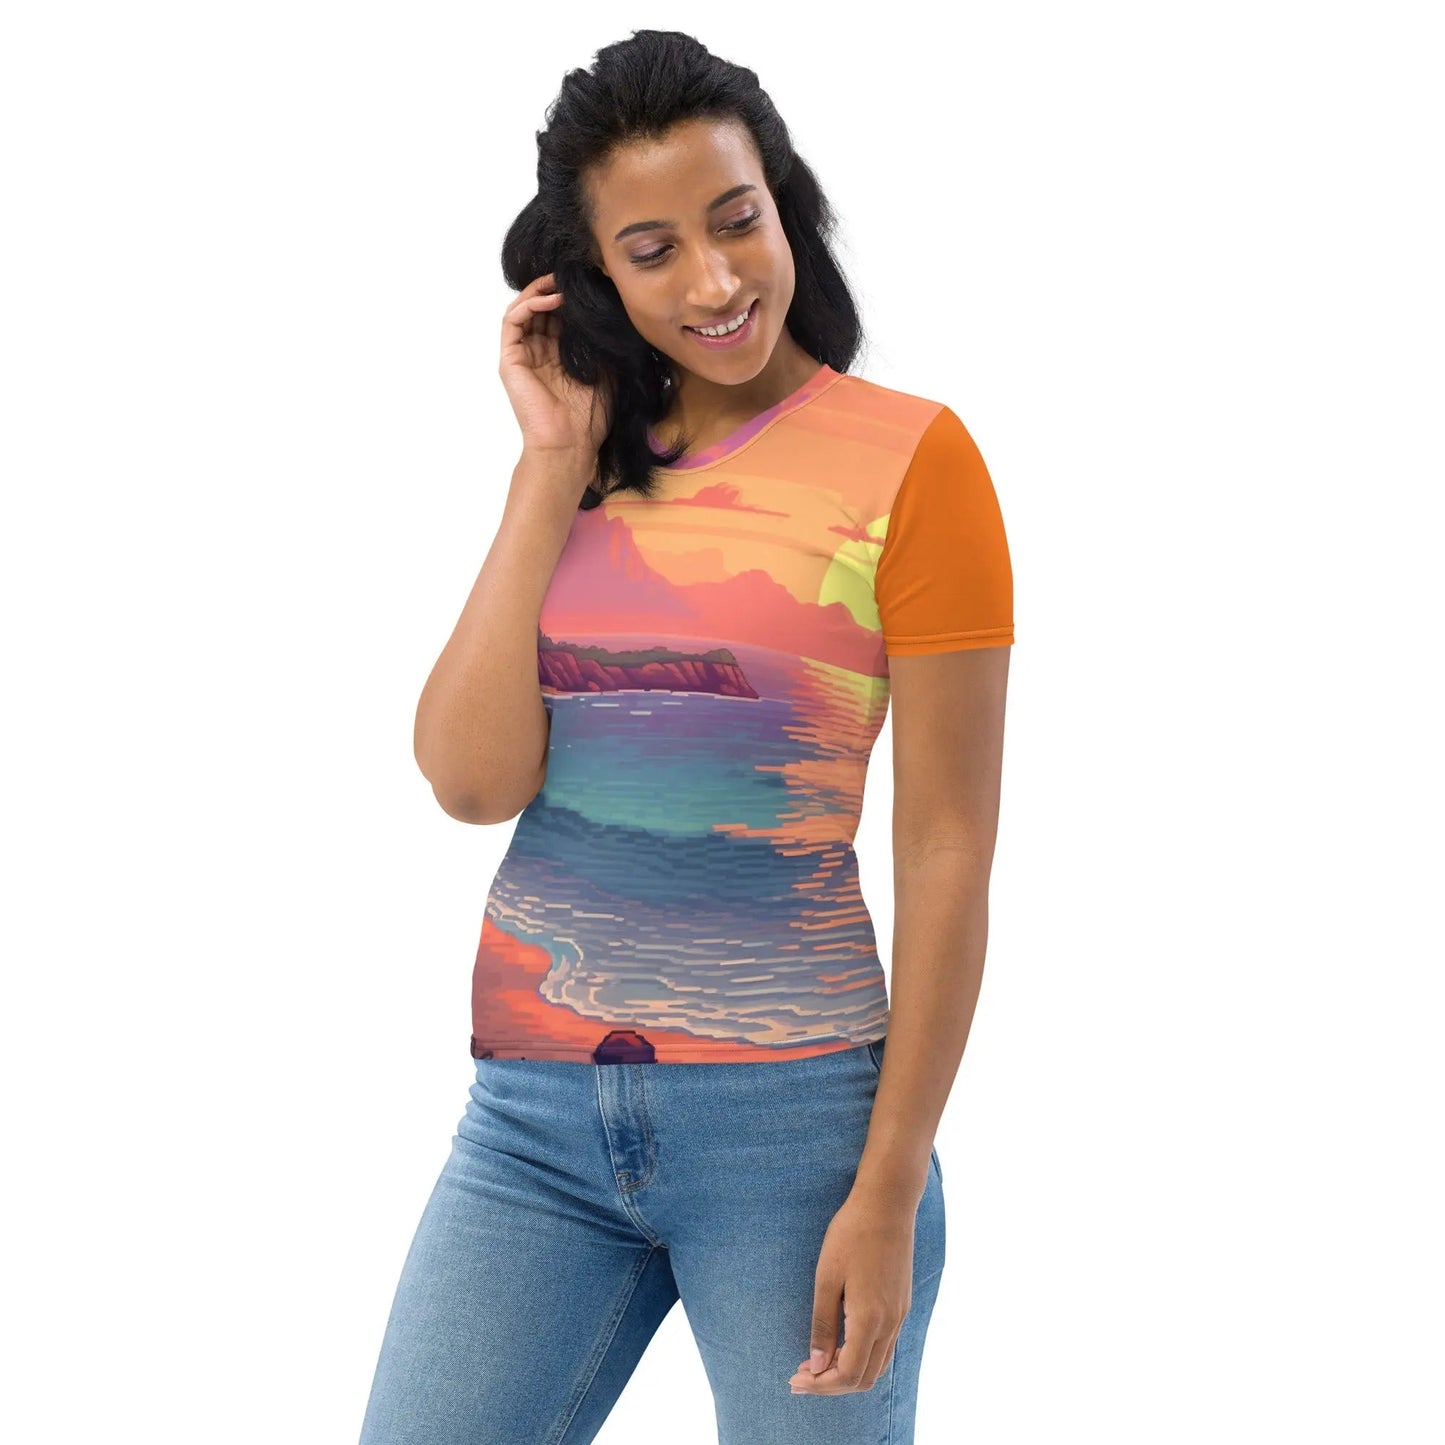 4 Pixel Art Sunset Beach Women’s T-shirt by Neduz Designs